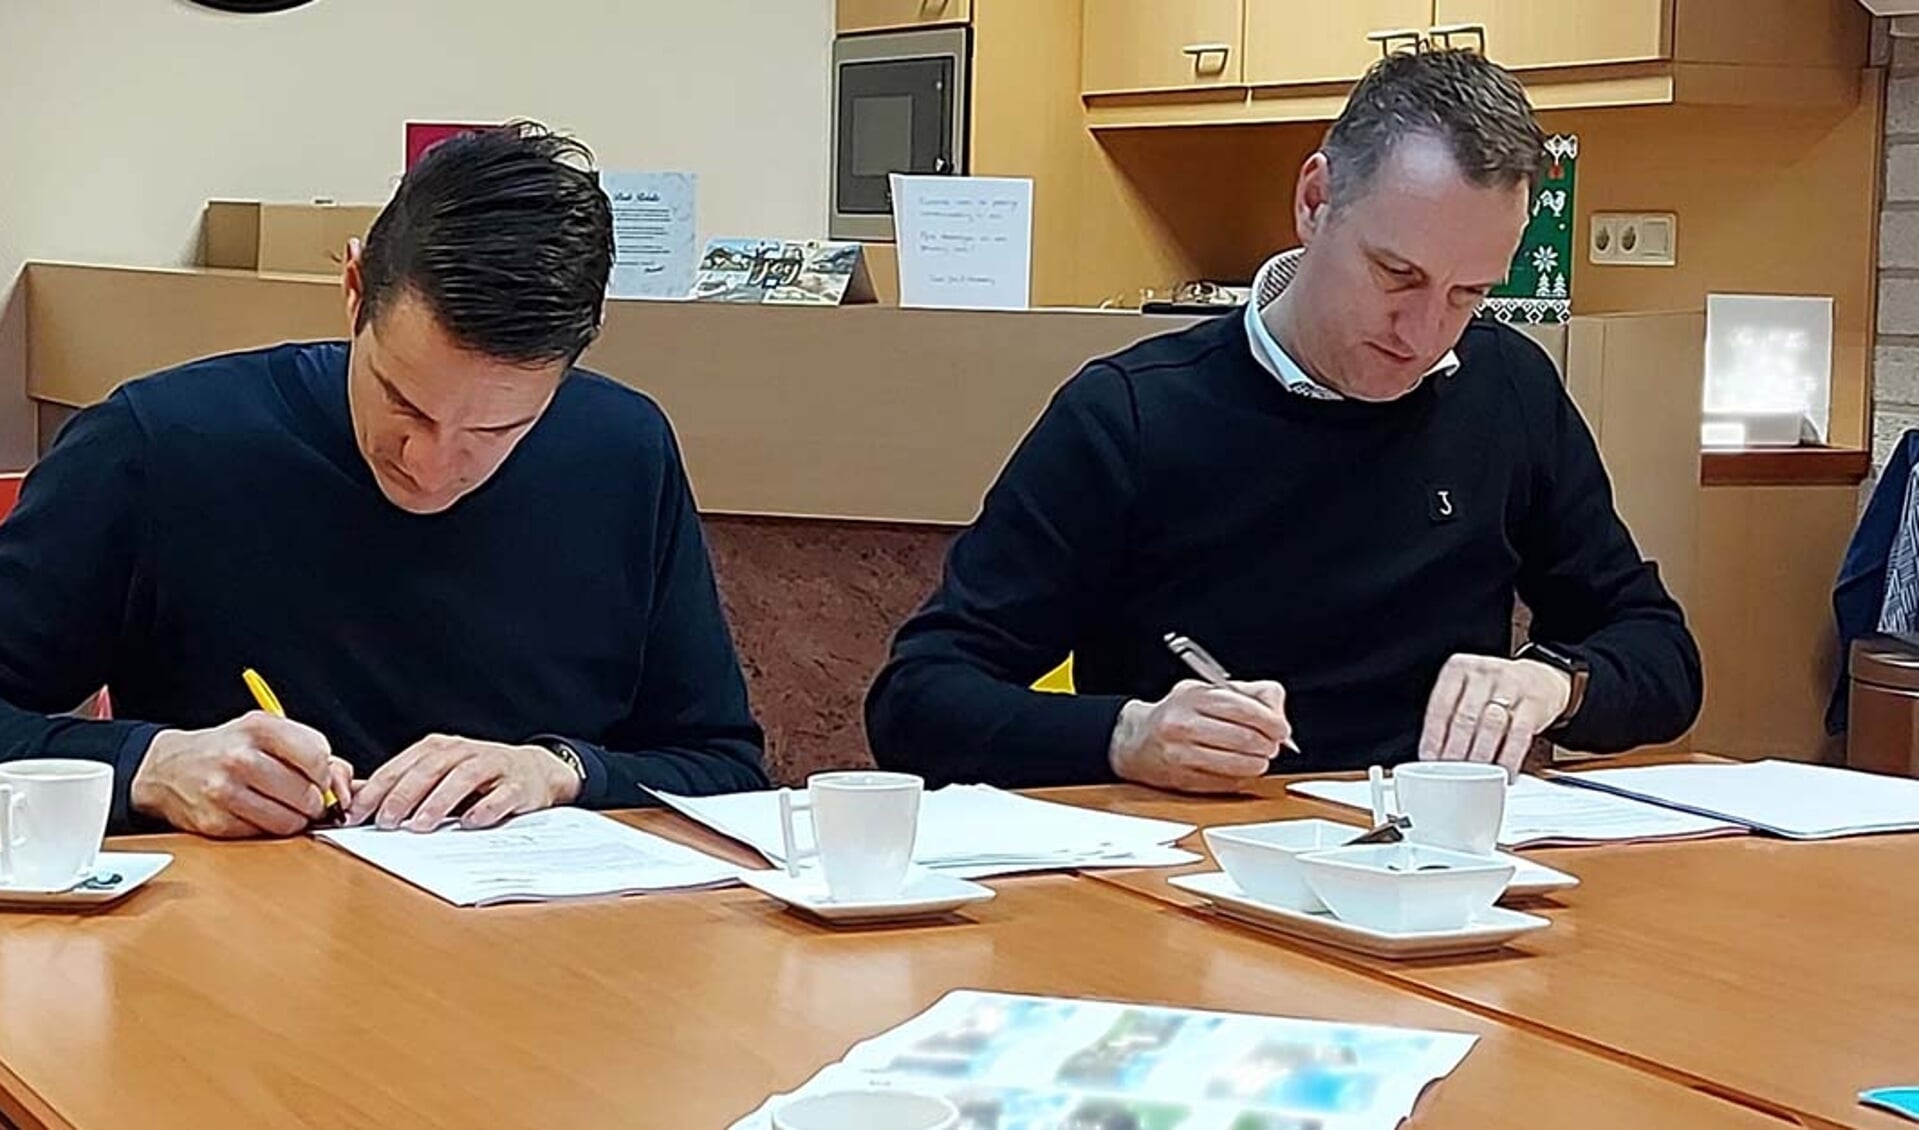 Maarten en Twan Weemen ondertekening de overeenkomst voor de nieuwbouw van het familiebedrijf in Haps.